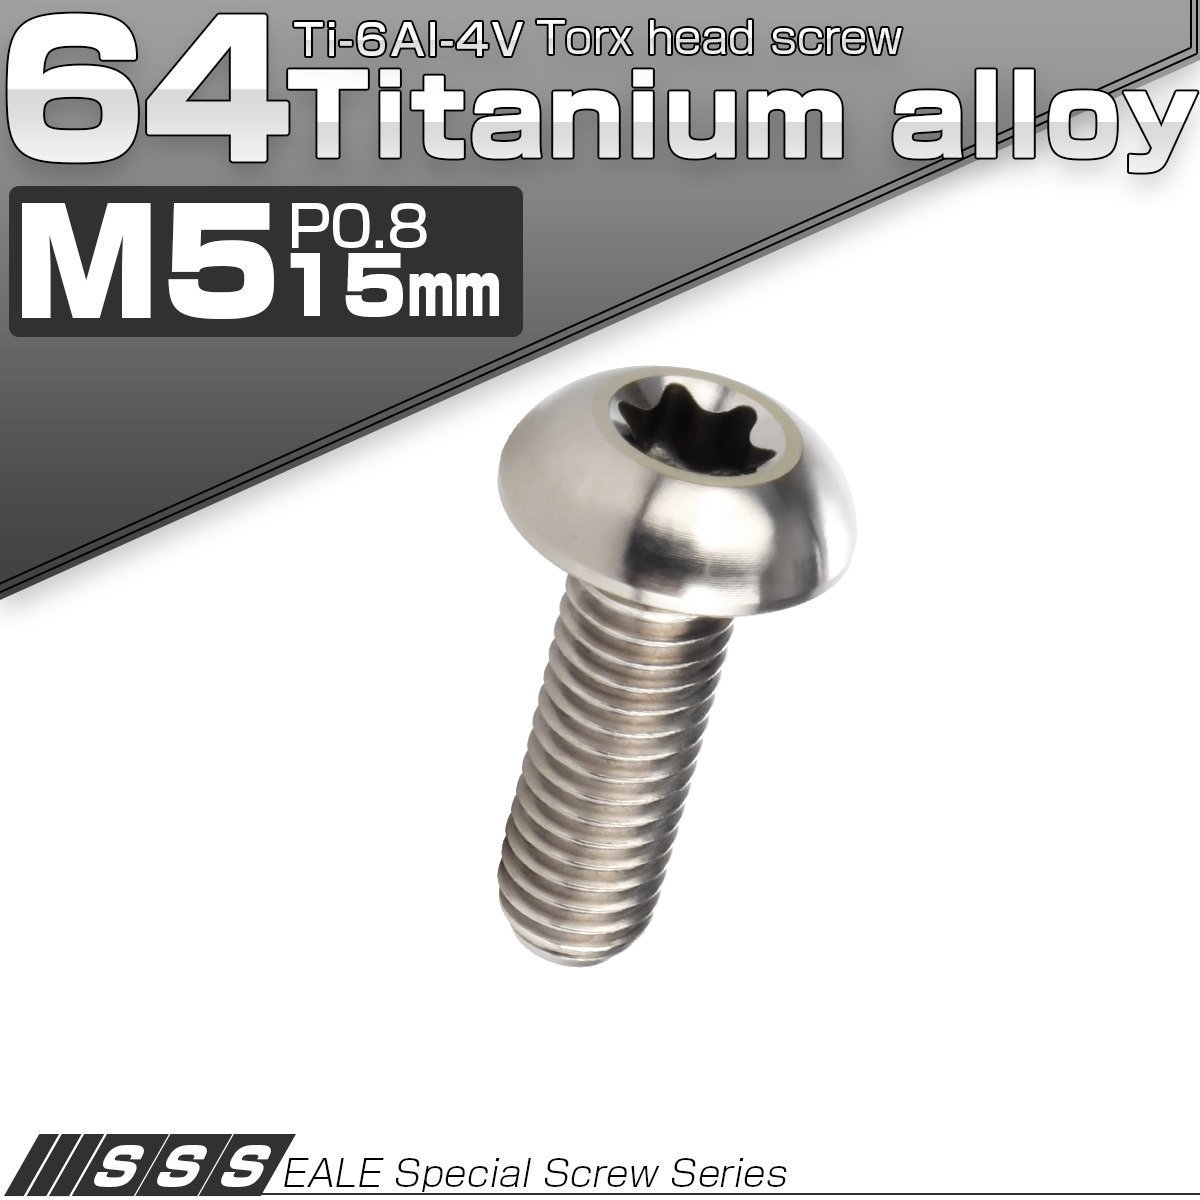 64チタン製 M5 15mm P0.8 トルクス穴付き ボタンボルト シルバー チタン原色 チタンボルト JA930_画像1